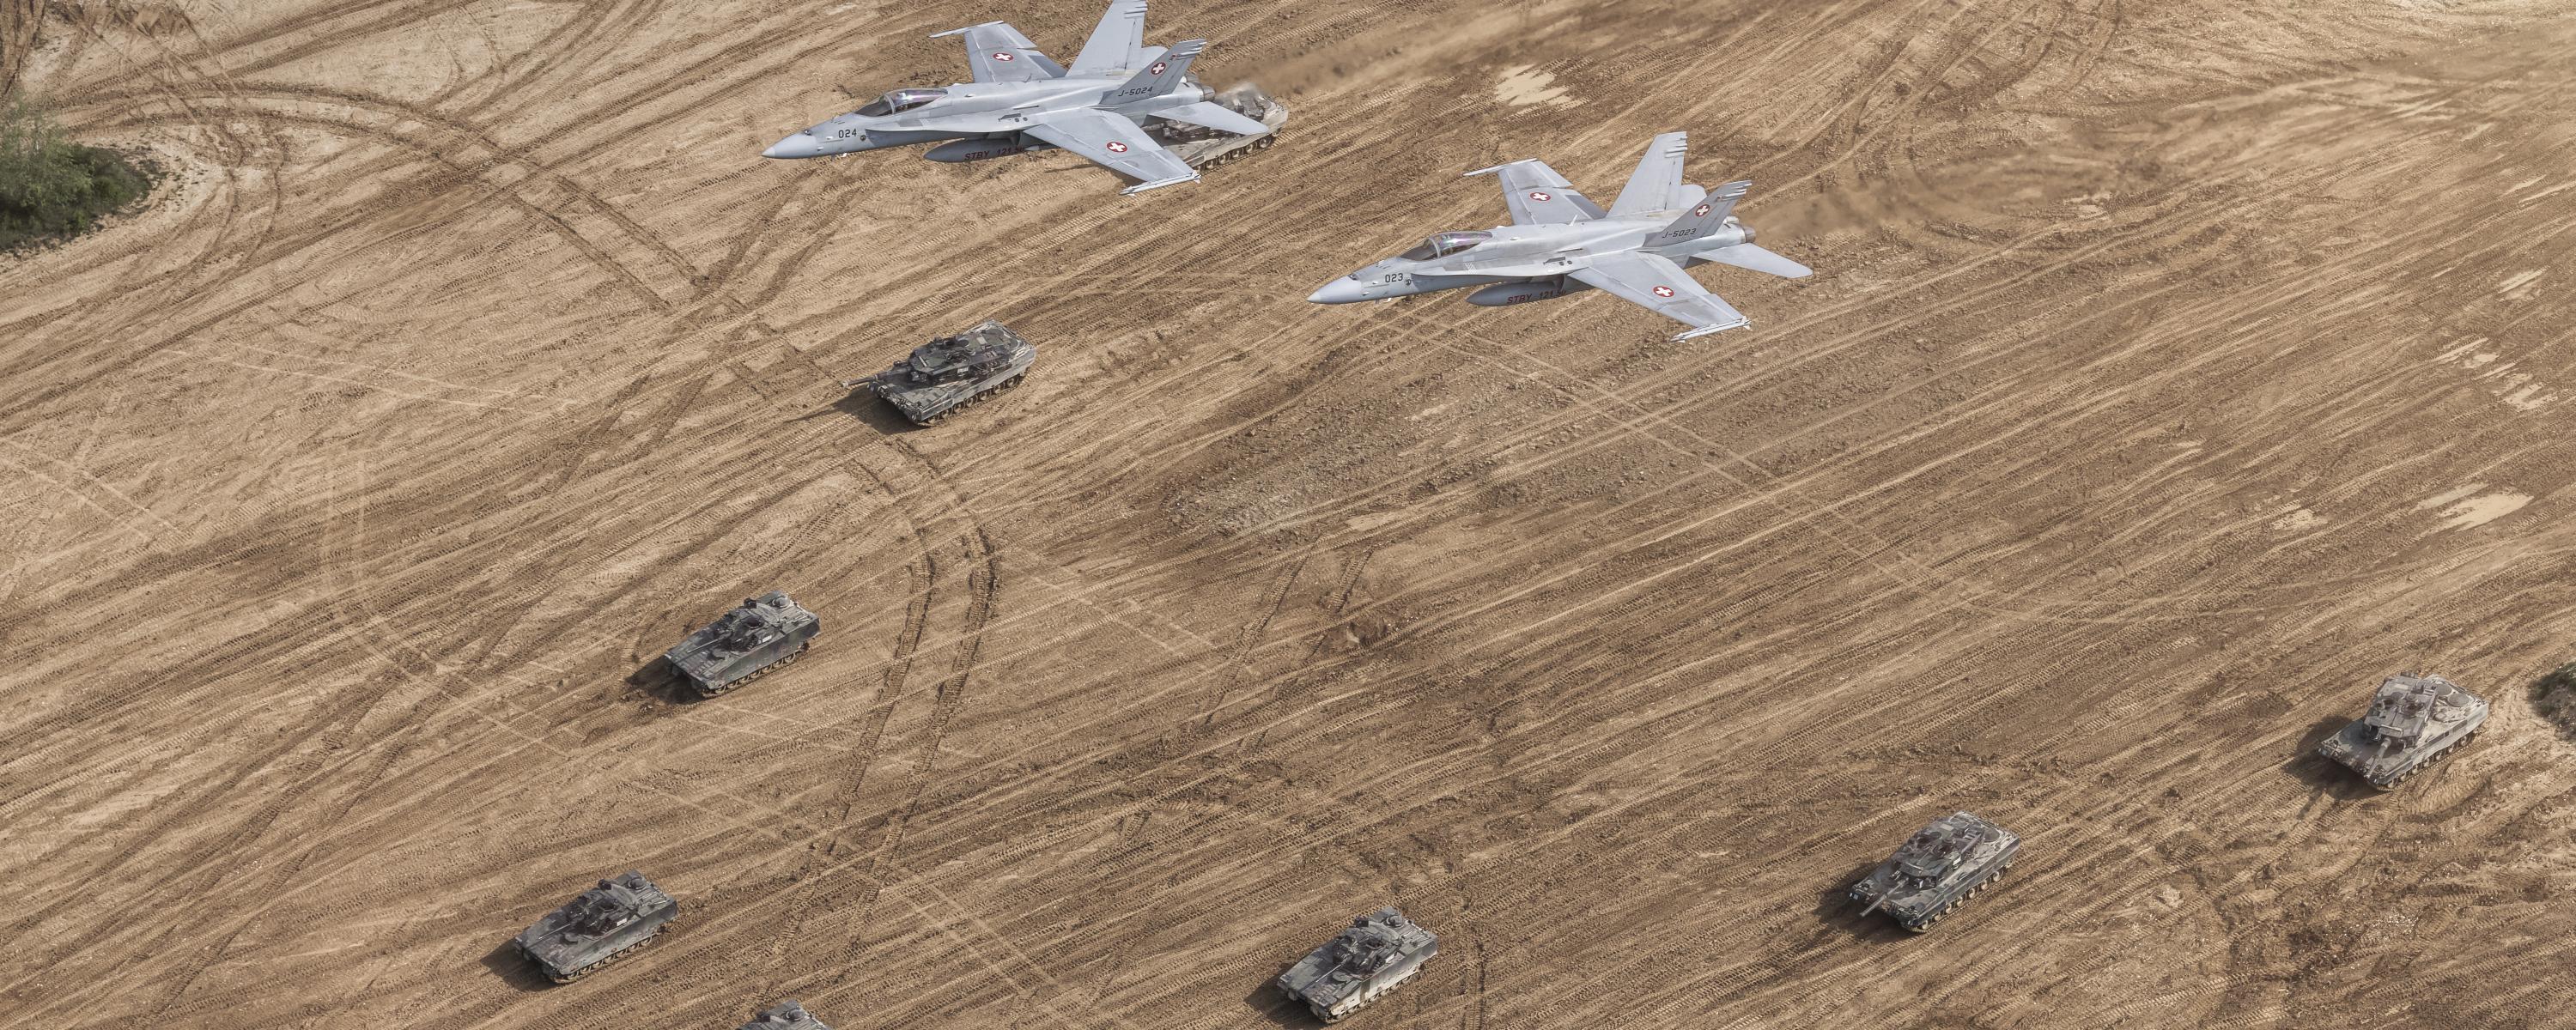 Zwei F/A-18 Kampfjets überfliegen eine Panzer-Keilformation auf einem Acker.